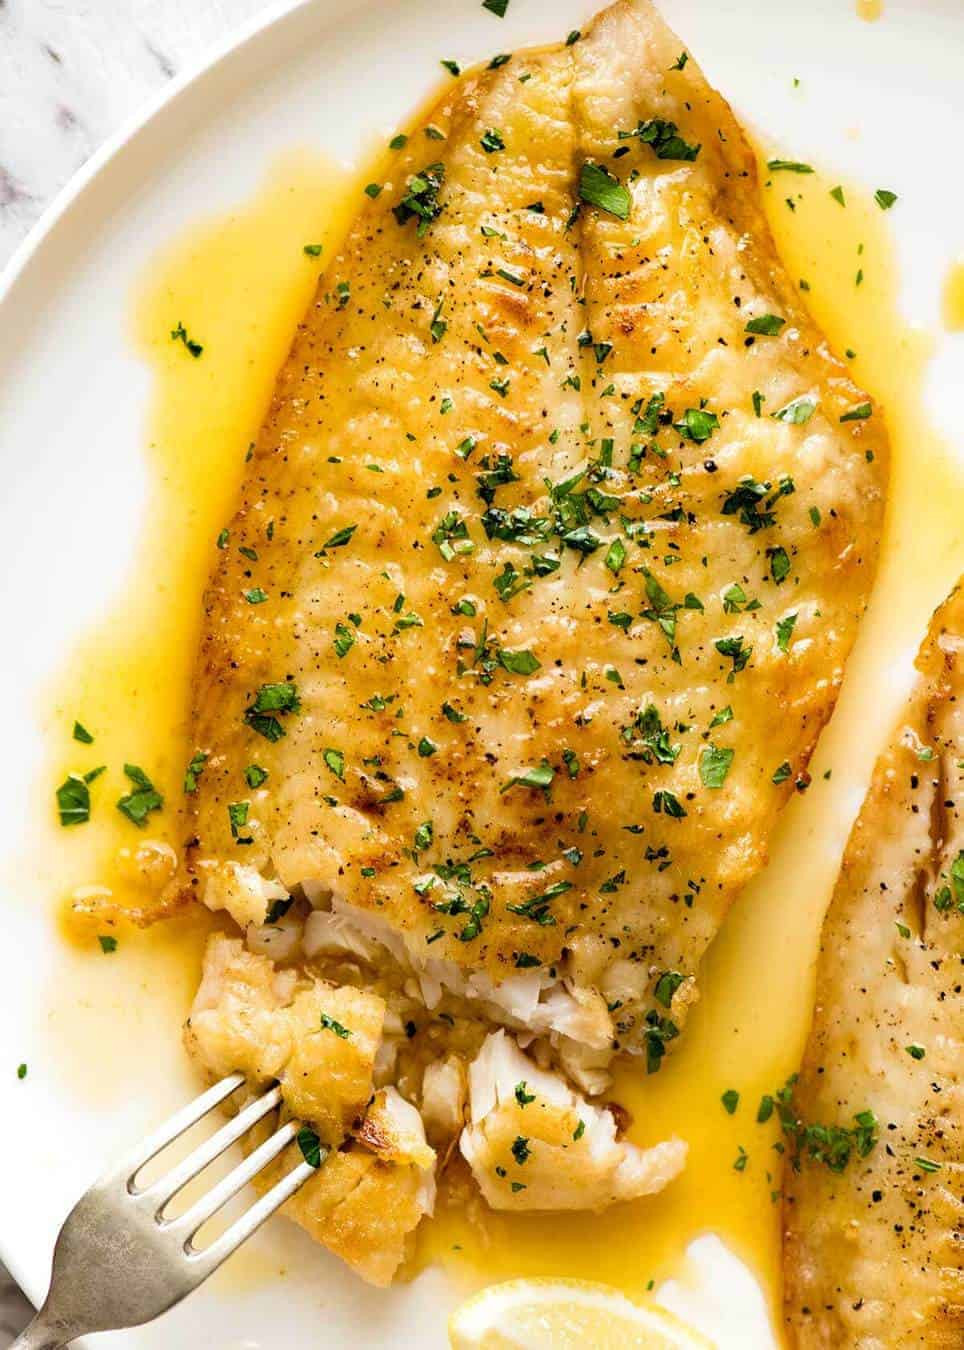 Sauce Recipes For Fish
 Killer Lemon Butter Sauce for Fish